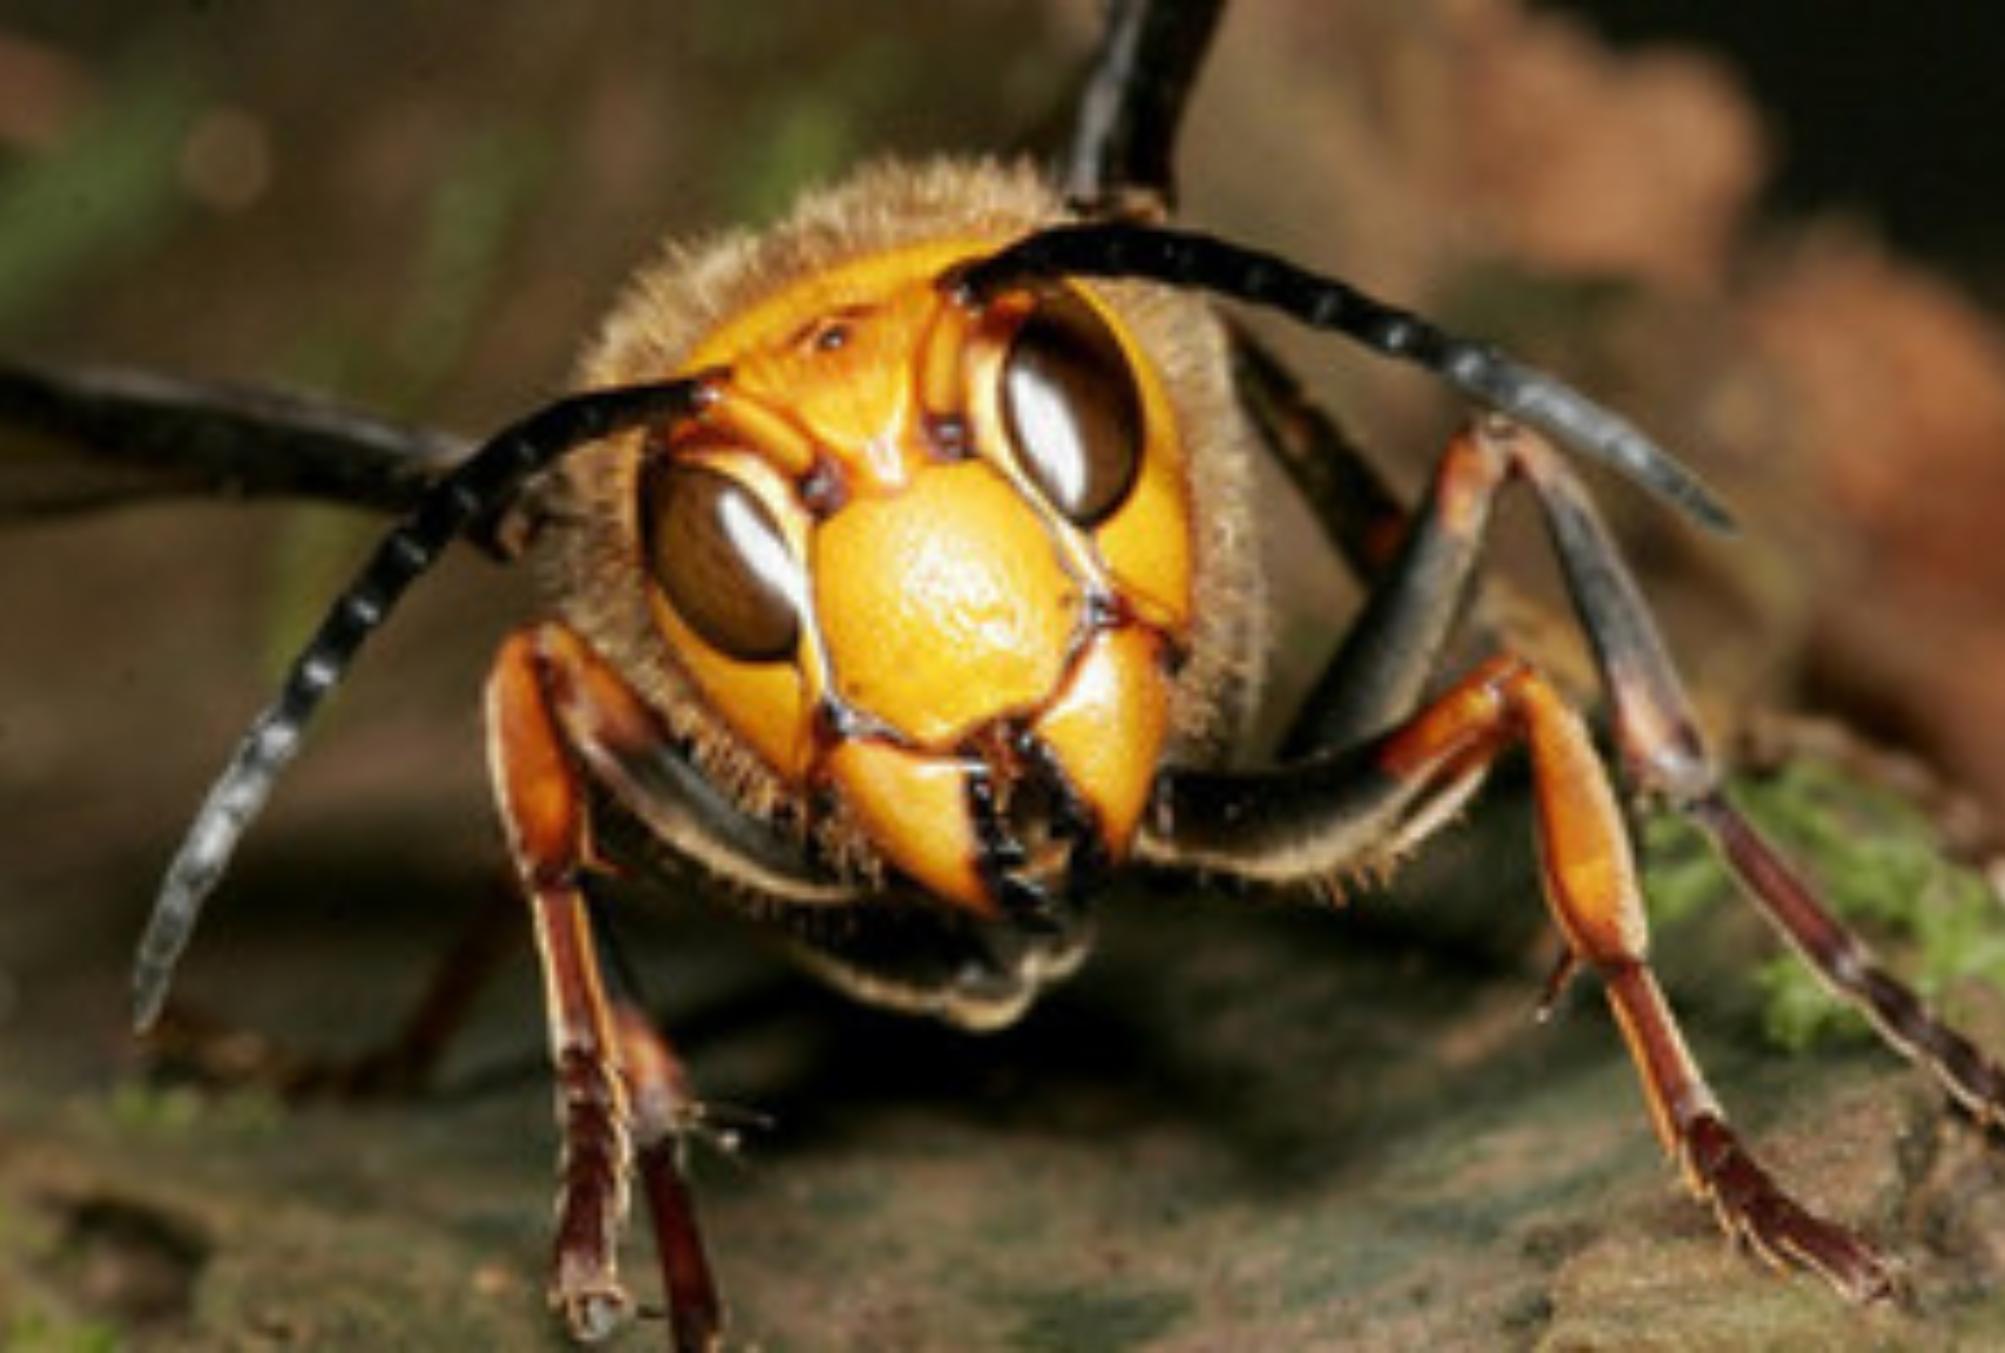 Σαρανταποδαρούσες κατσαρίδες μυρμήγκια και ακόμη 7 ανατριχιαστικά έντομα που φωλιάζουν στο σπίτι: Δείτε πως να τα εξαφανίσετε 